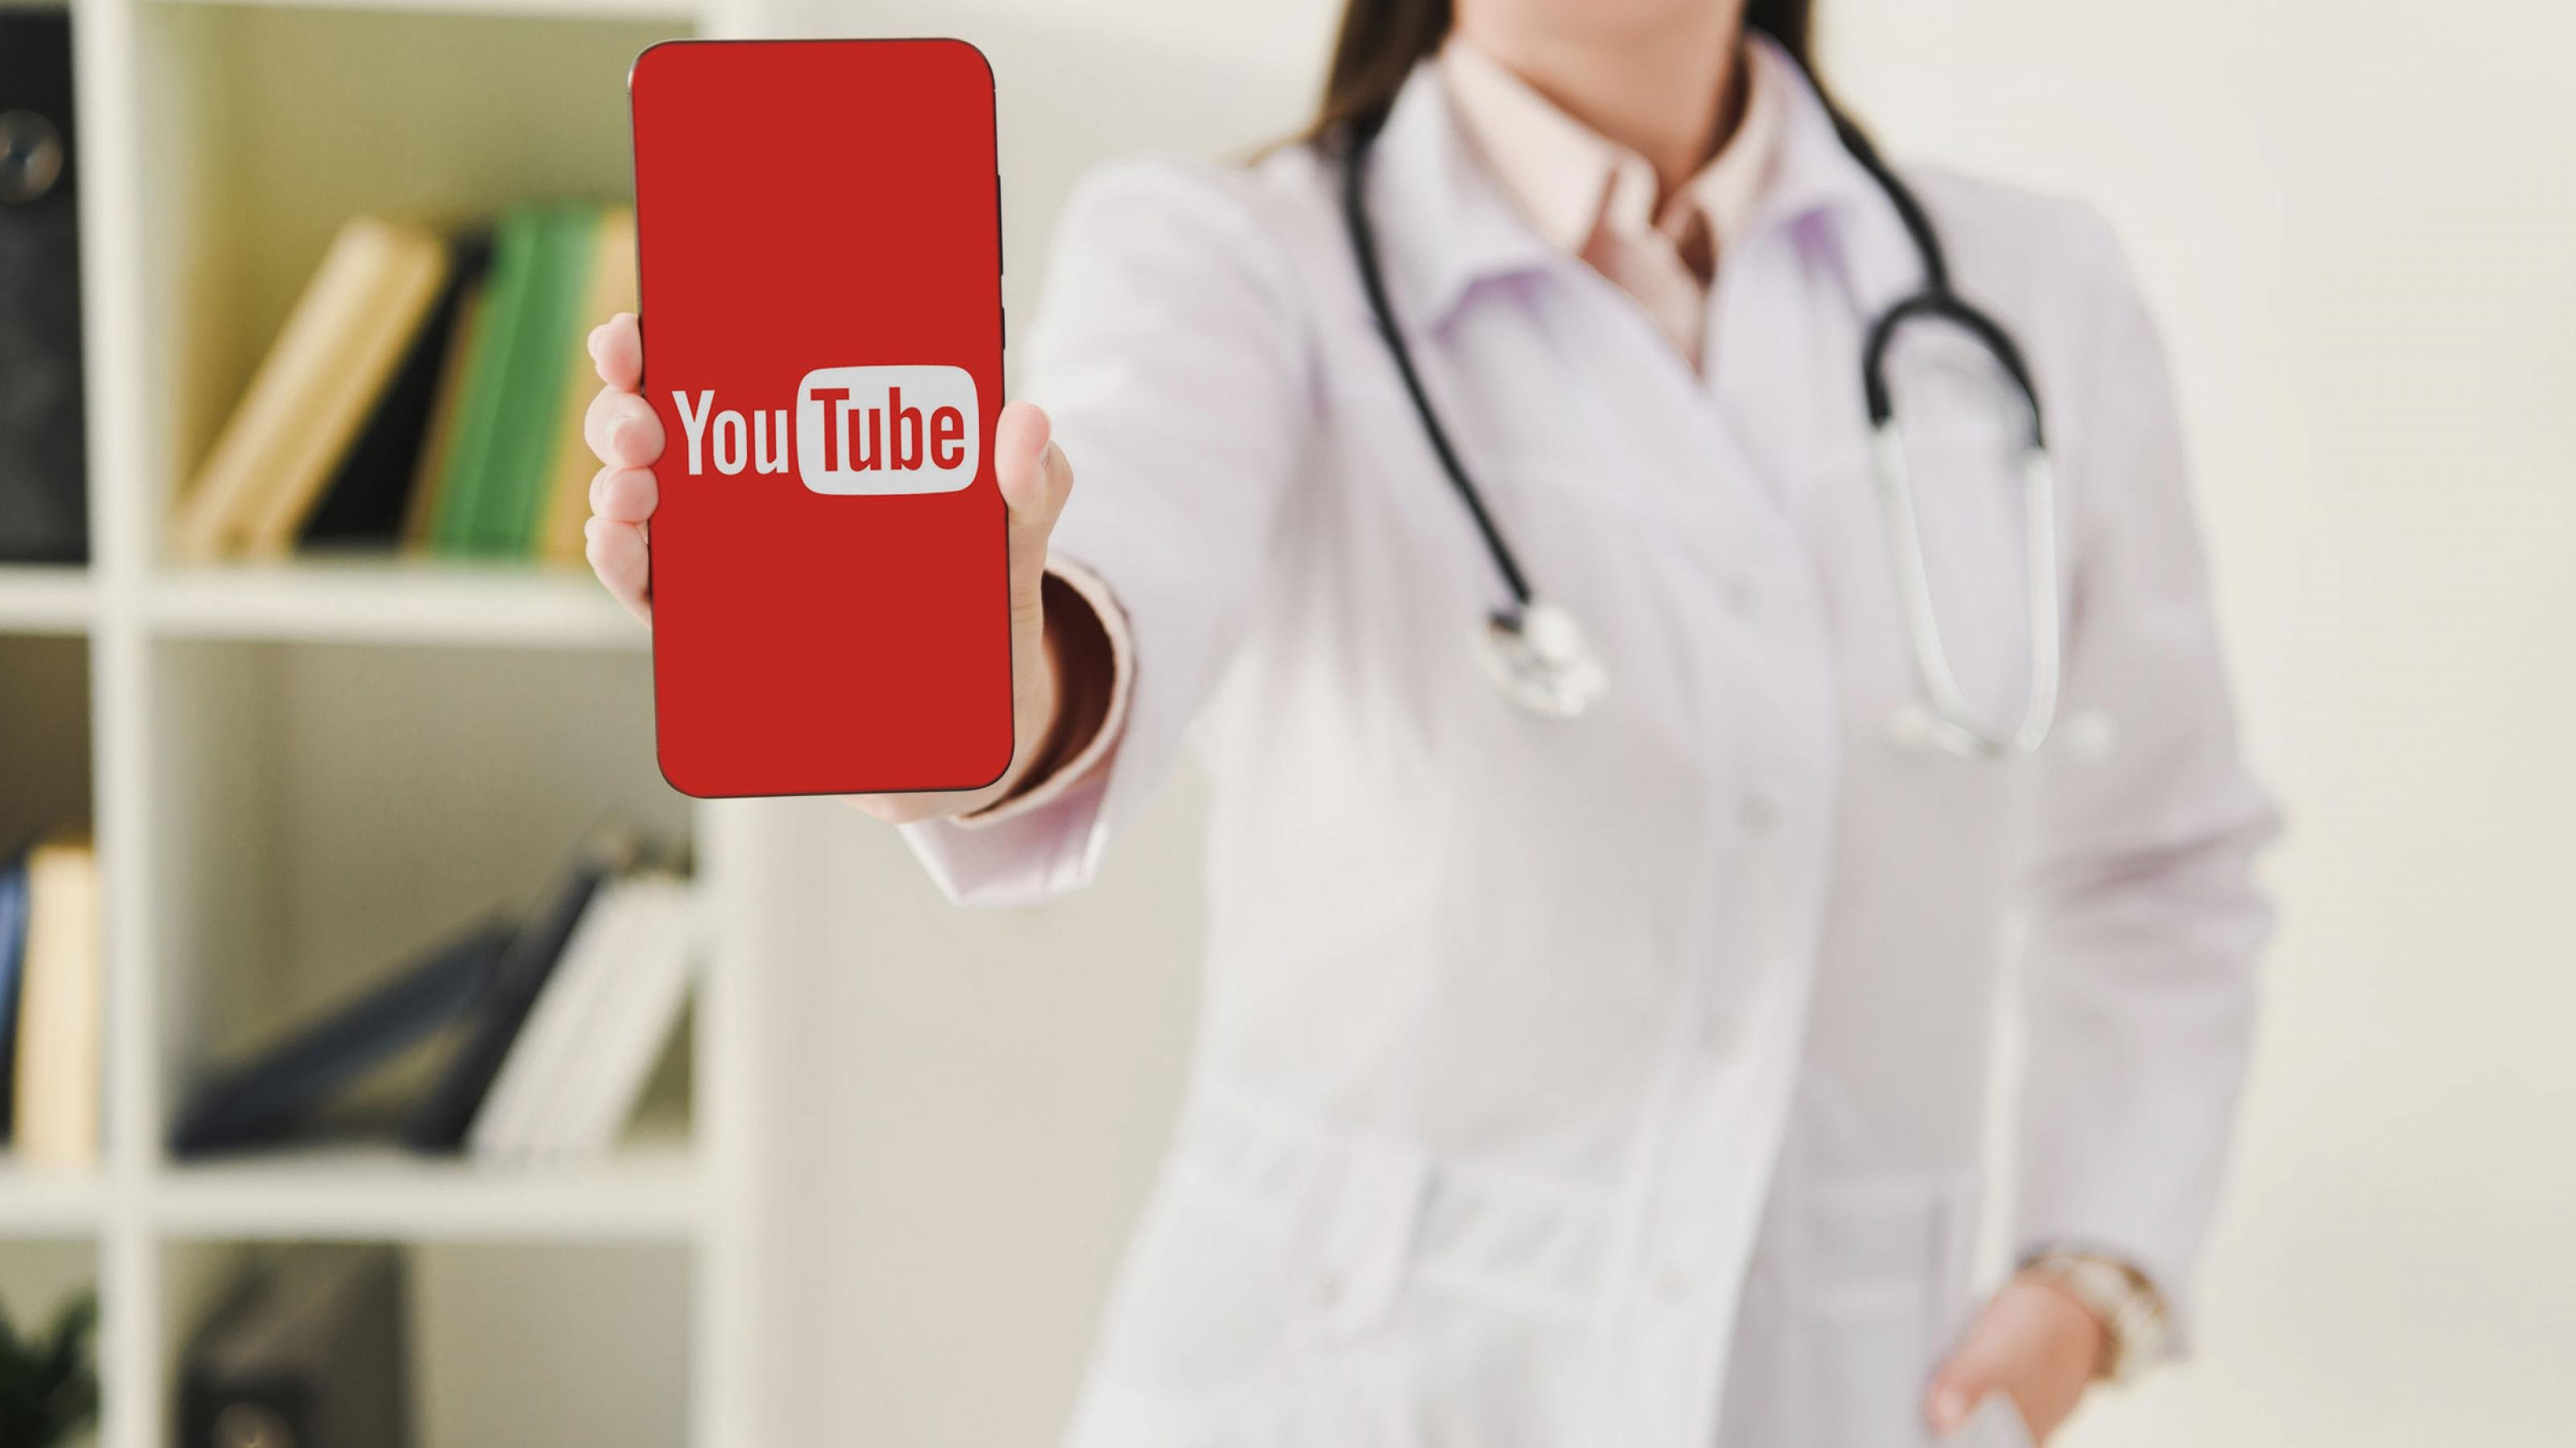 Eine Ärztin hält ein Smartphone mit dem YouTube-Logo.